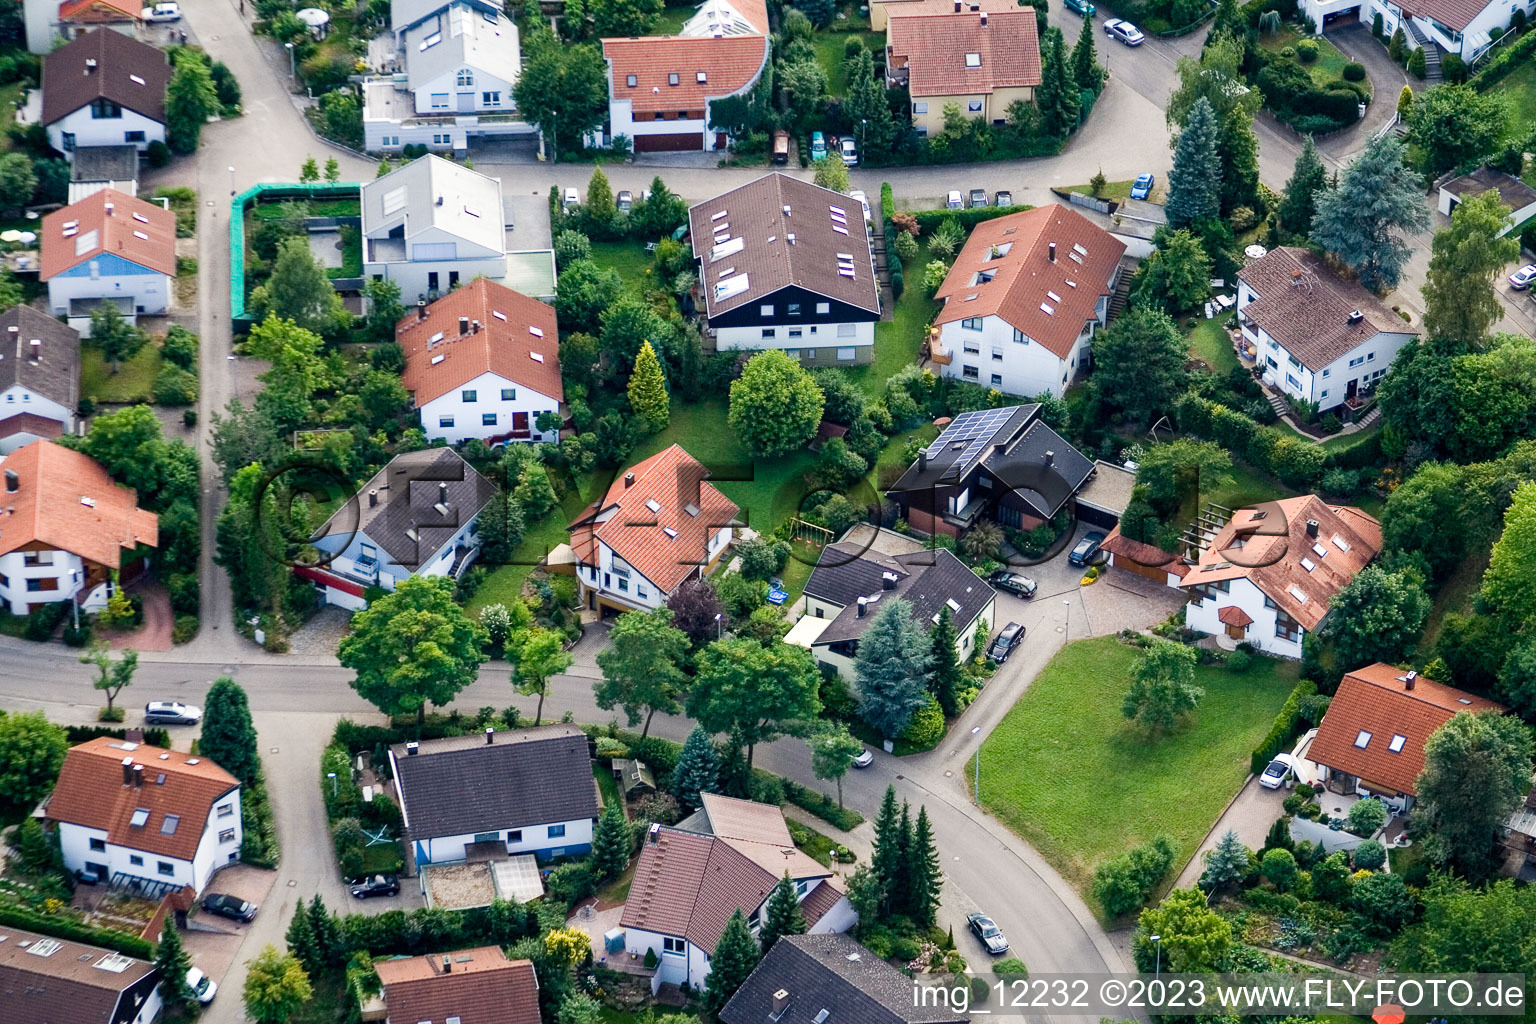 Ehbühl, Kirchhalde in Herrenberg im Bundesland Baden-Württemberg, Deutschland aus der Drohnenperspektive